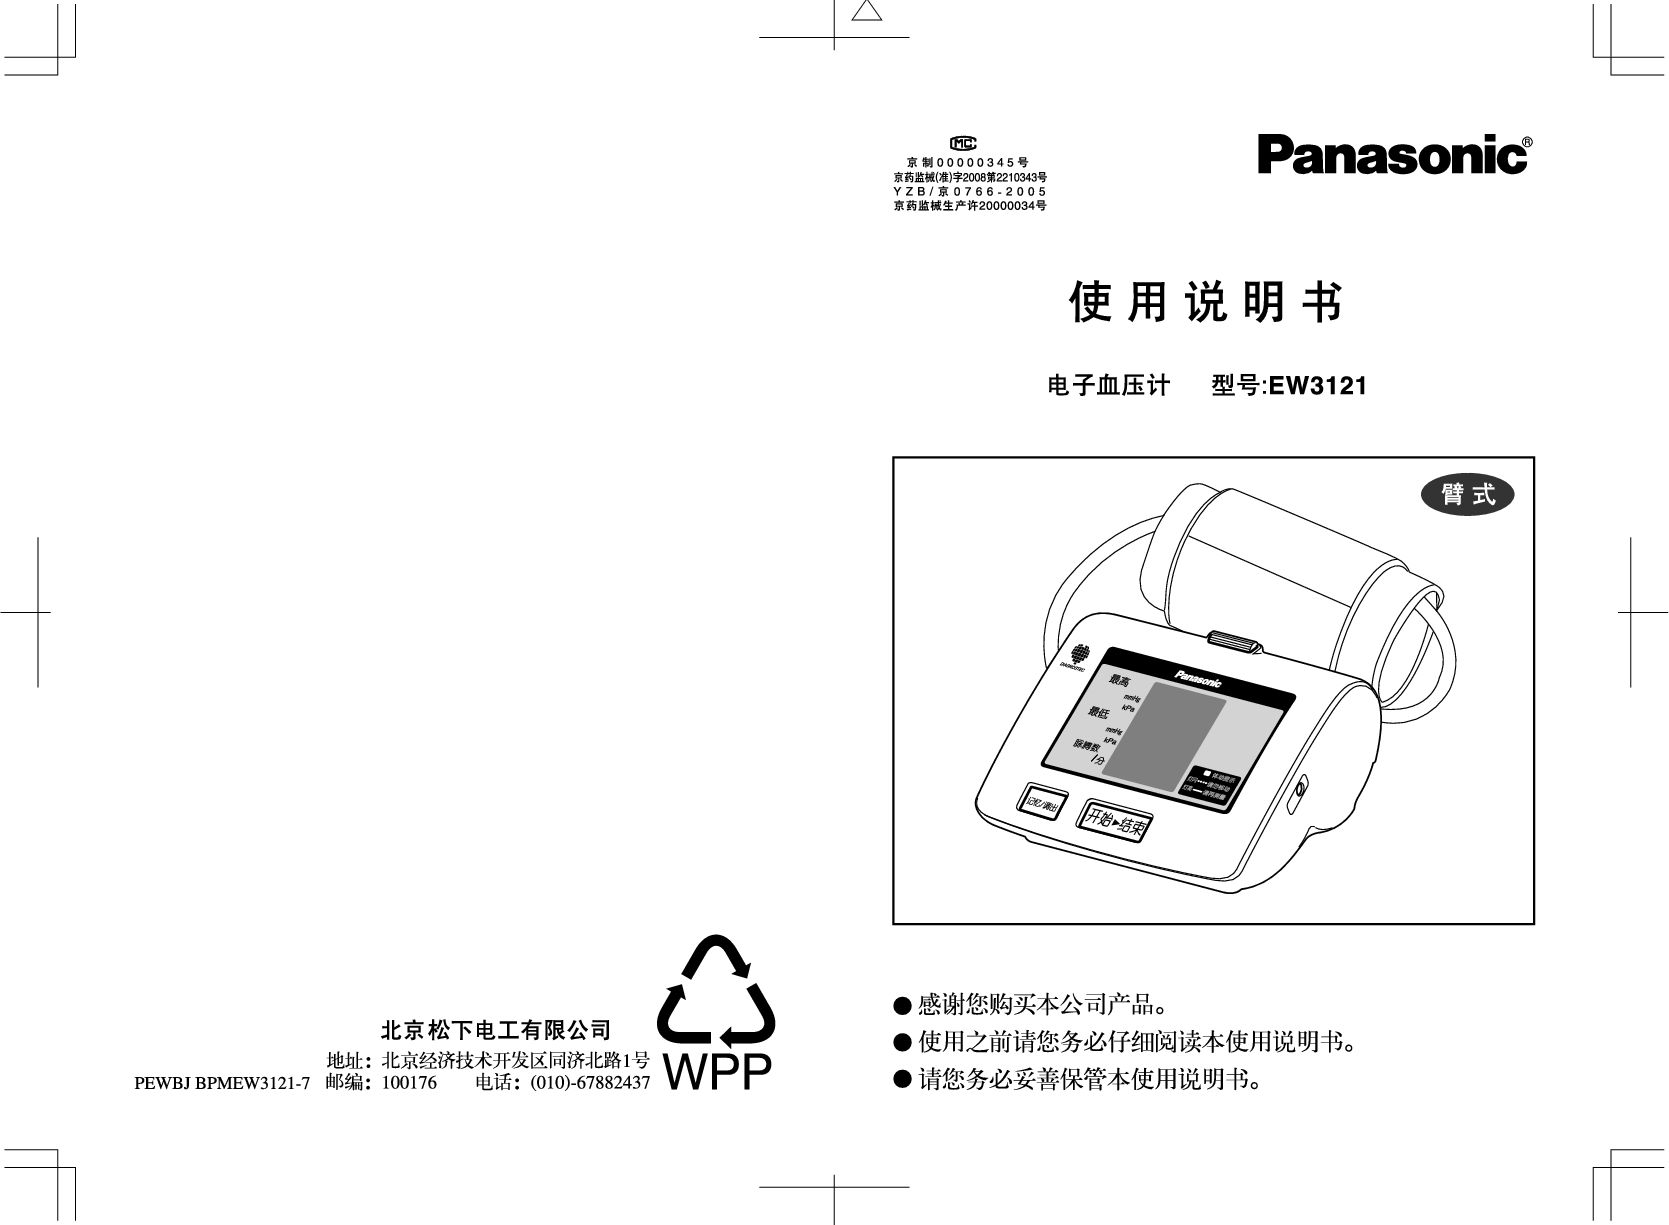 松下 Panasonic EW3121 说明书 封面